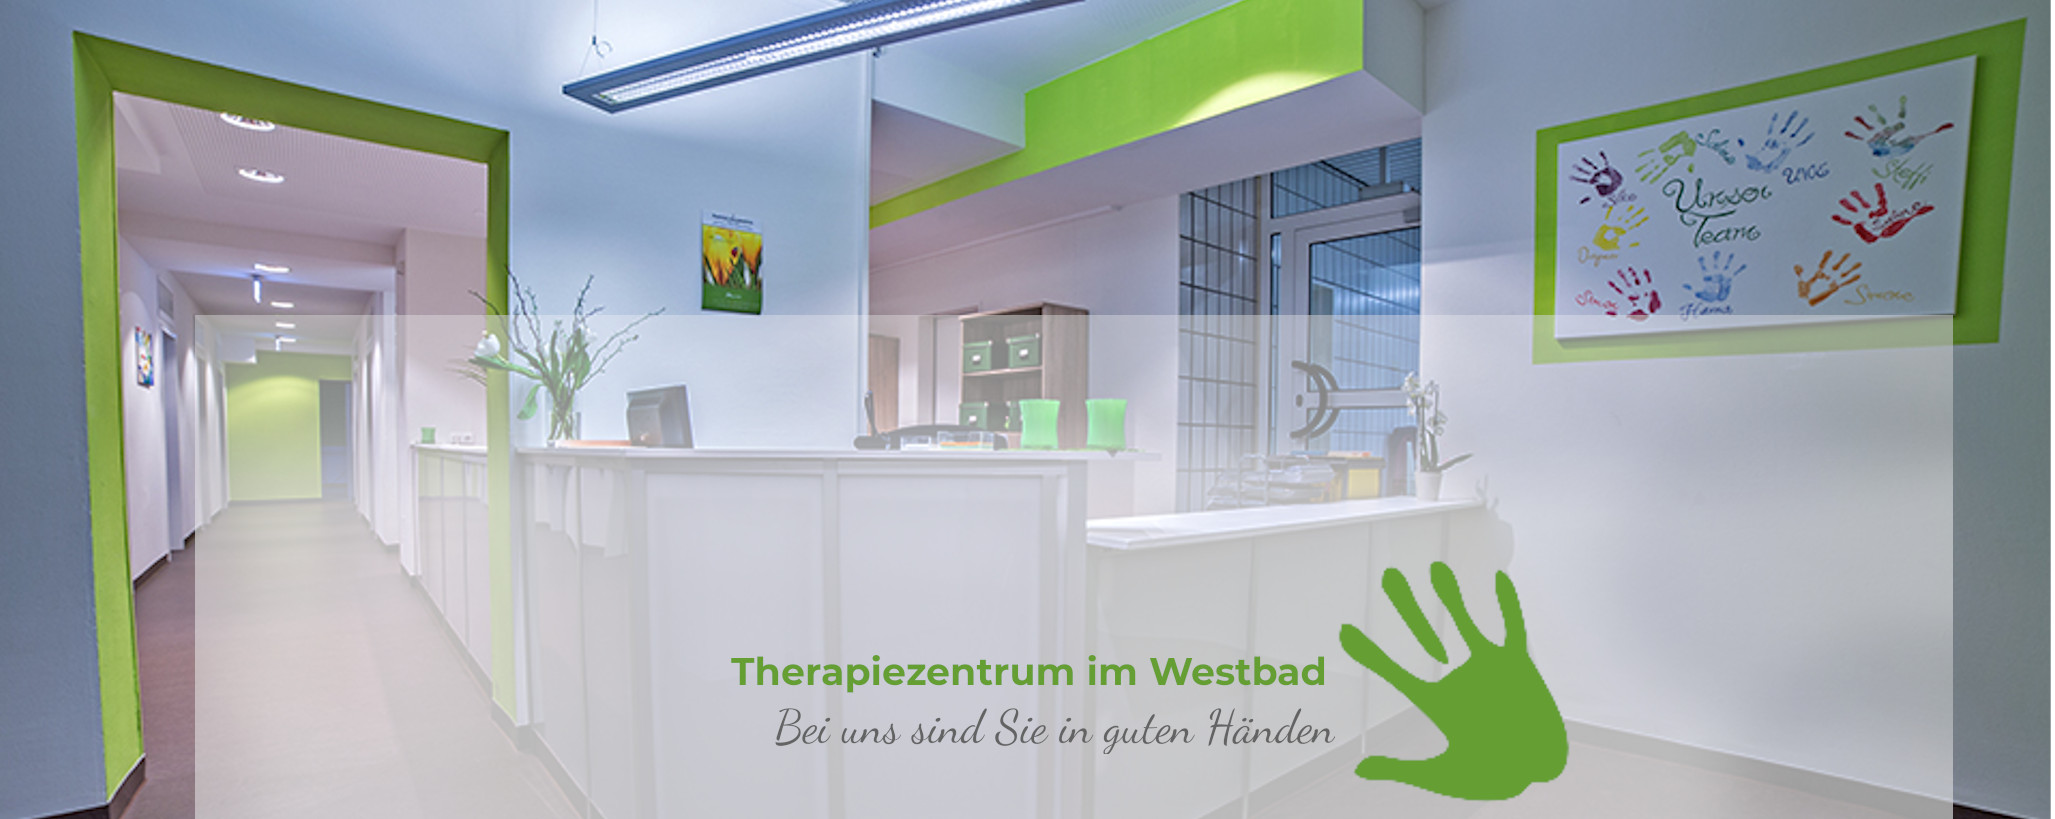 (c) Therapiezentrum-westbad.de